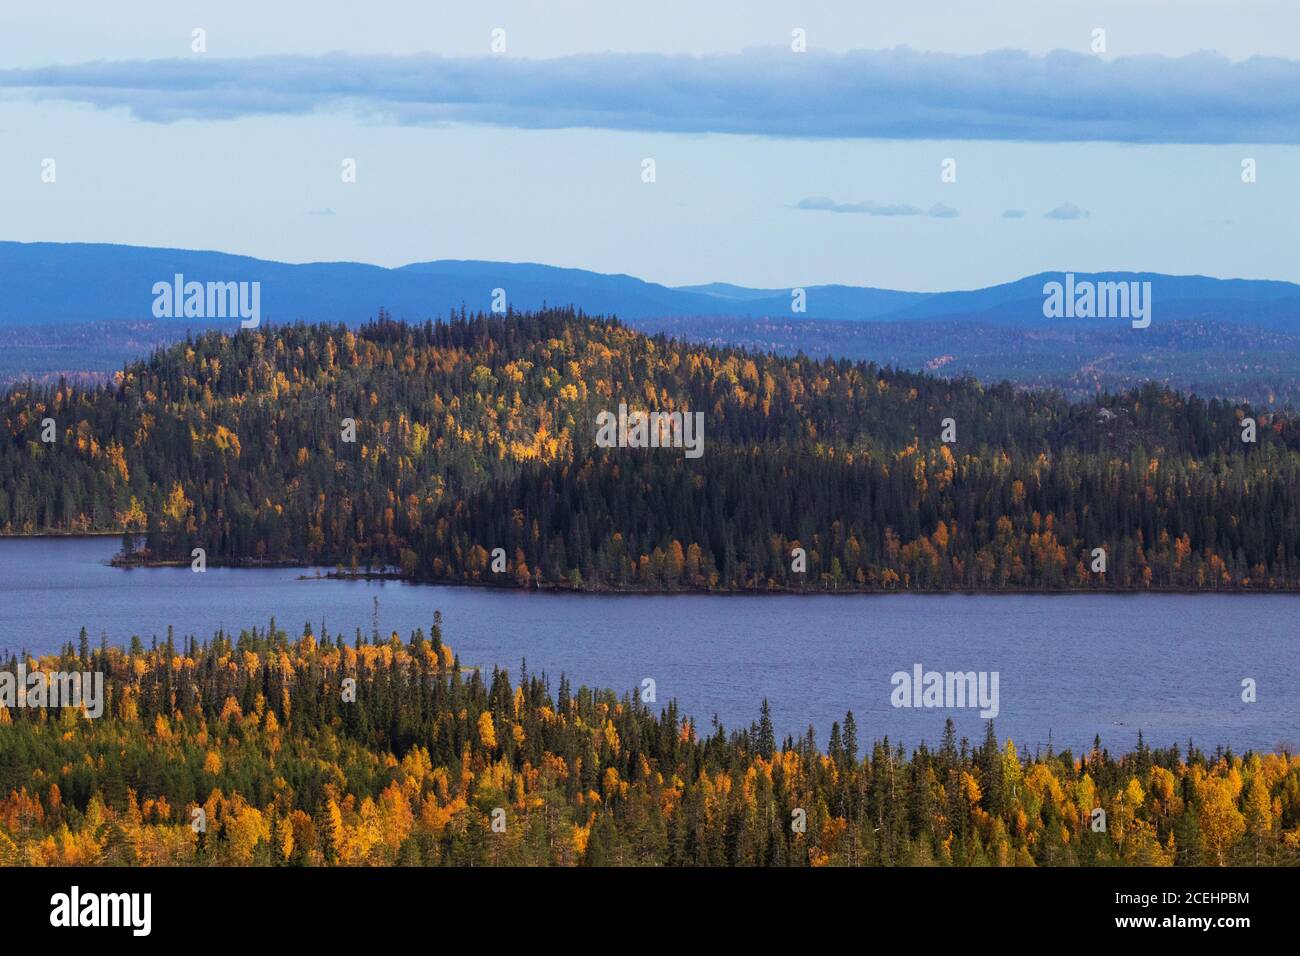 Flanc de coteau recouvert d'une forêt mixte de taïga pendant le feuillage d'automne par une journée ensoleillée au bord du lac. Kuusamo, nord de la Finlande. Banque D'Images